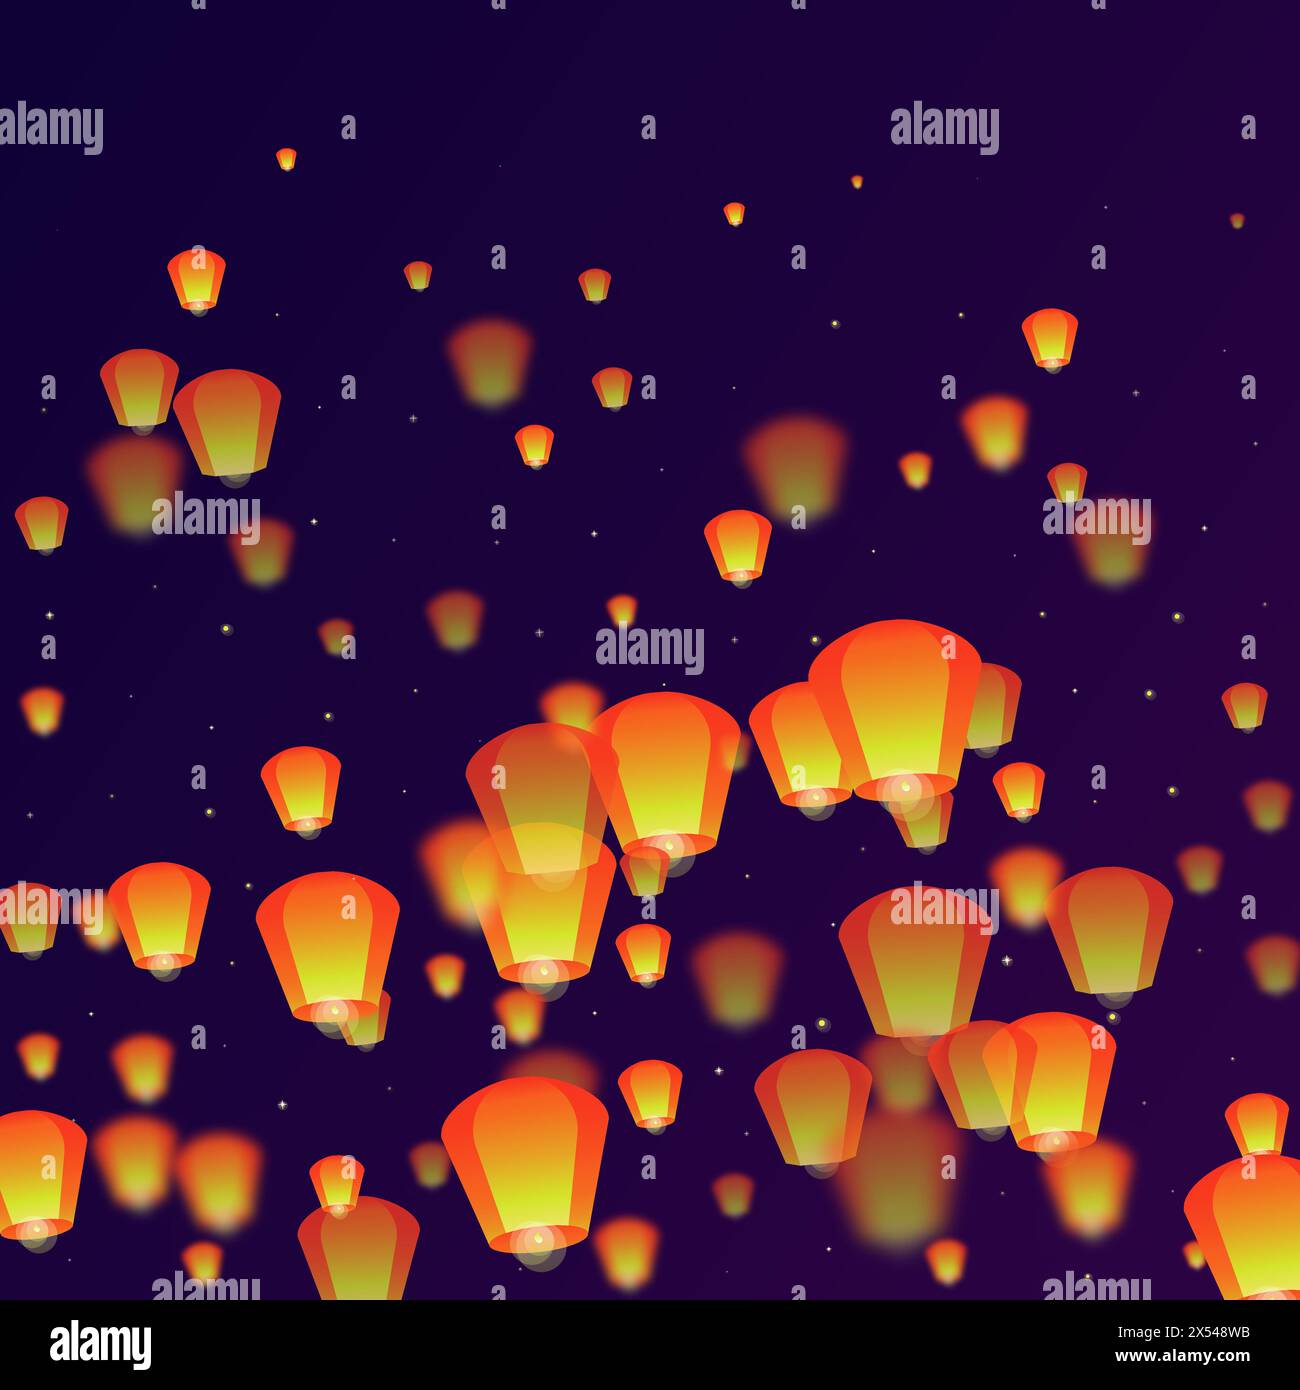 Lanterne che fluttuano nel cielo notturno. Vacanze in Thailandia con lanterne di carta che volano nel cielo notturno. Celebrazioni per il festival delle lanterne. Vettore i Illustrazione Vettoriale